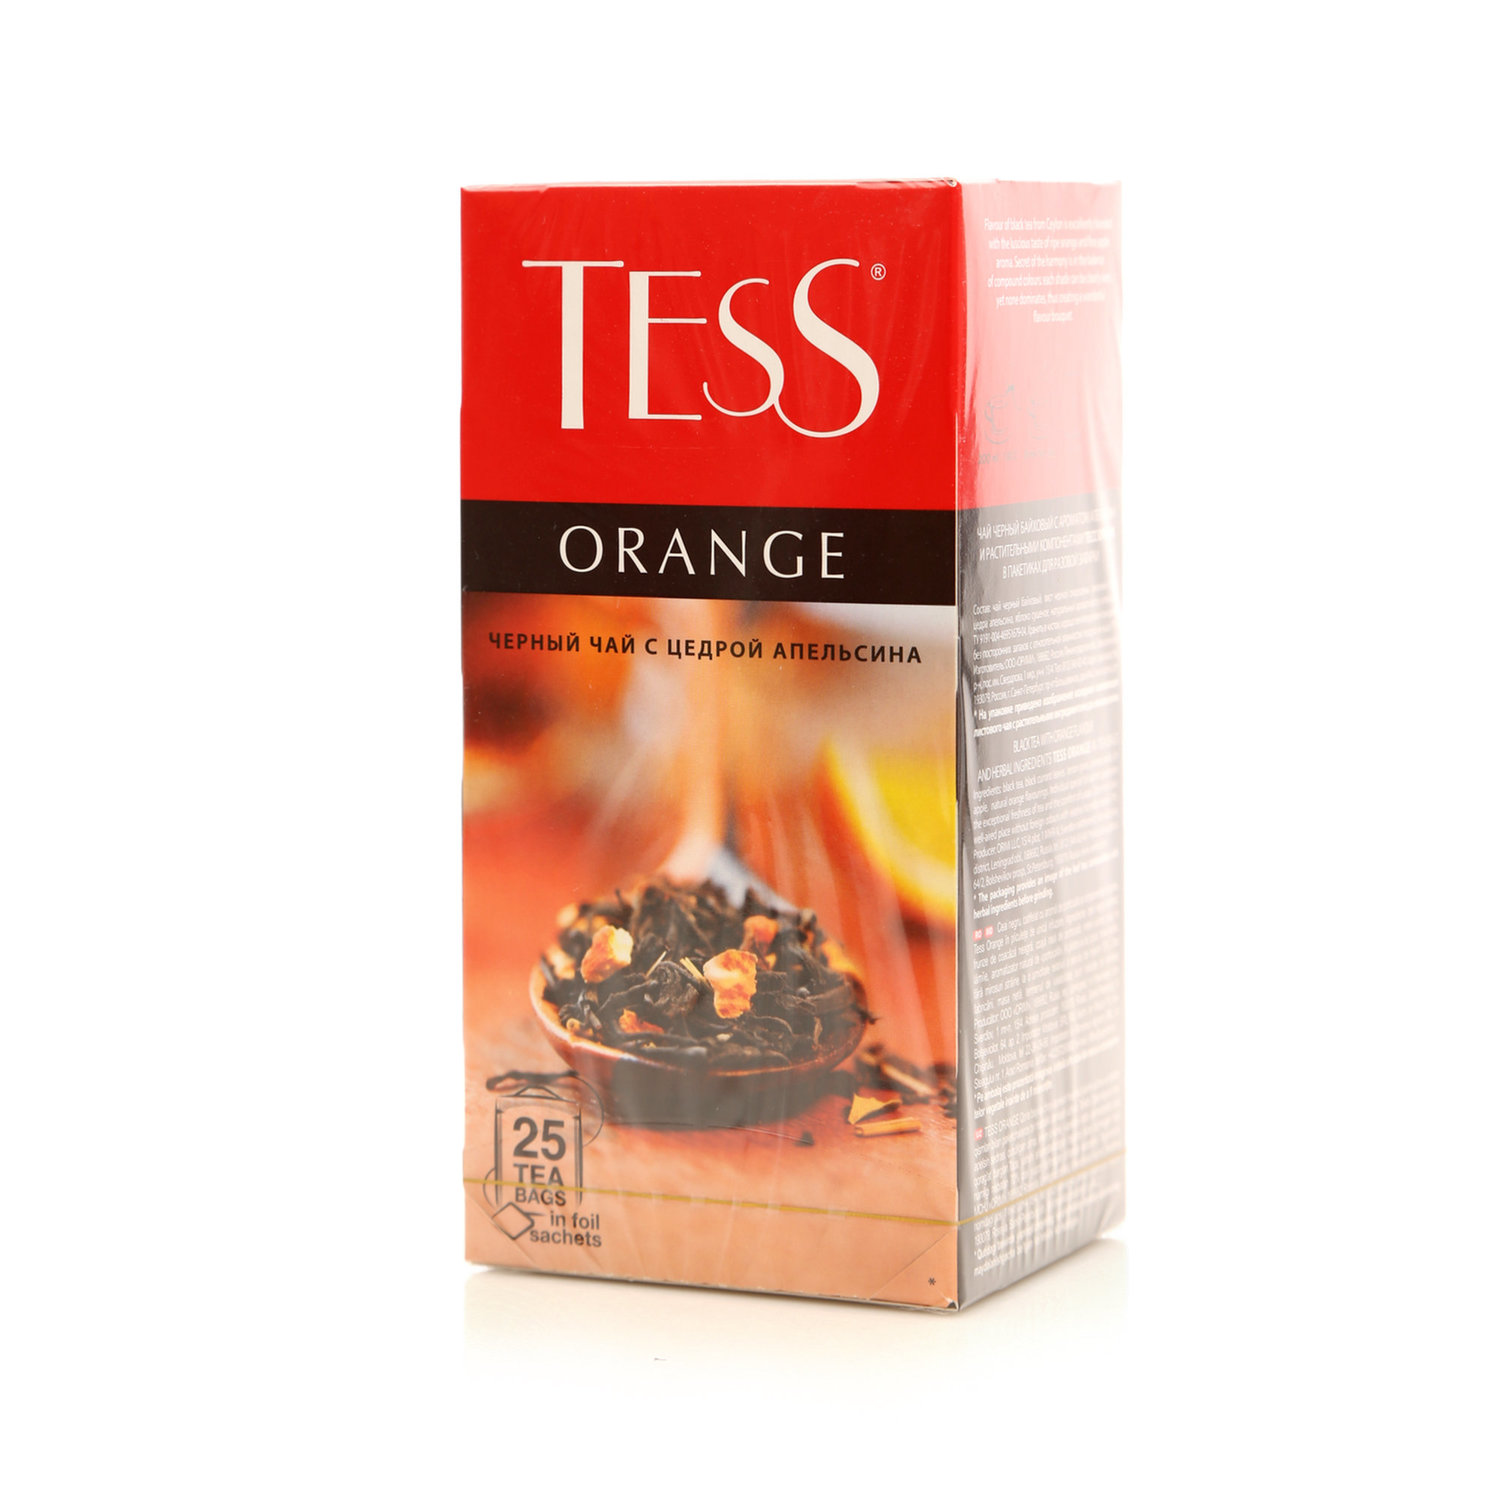 Чай TESS Чёрный цедра апельсина (Orange) 25 пак. в магазине Тольятти-Водокачка, фото 